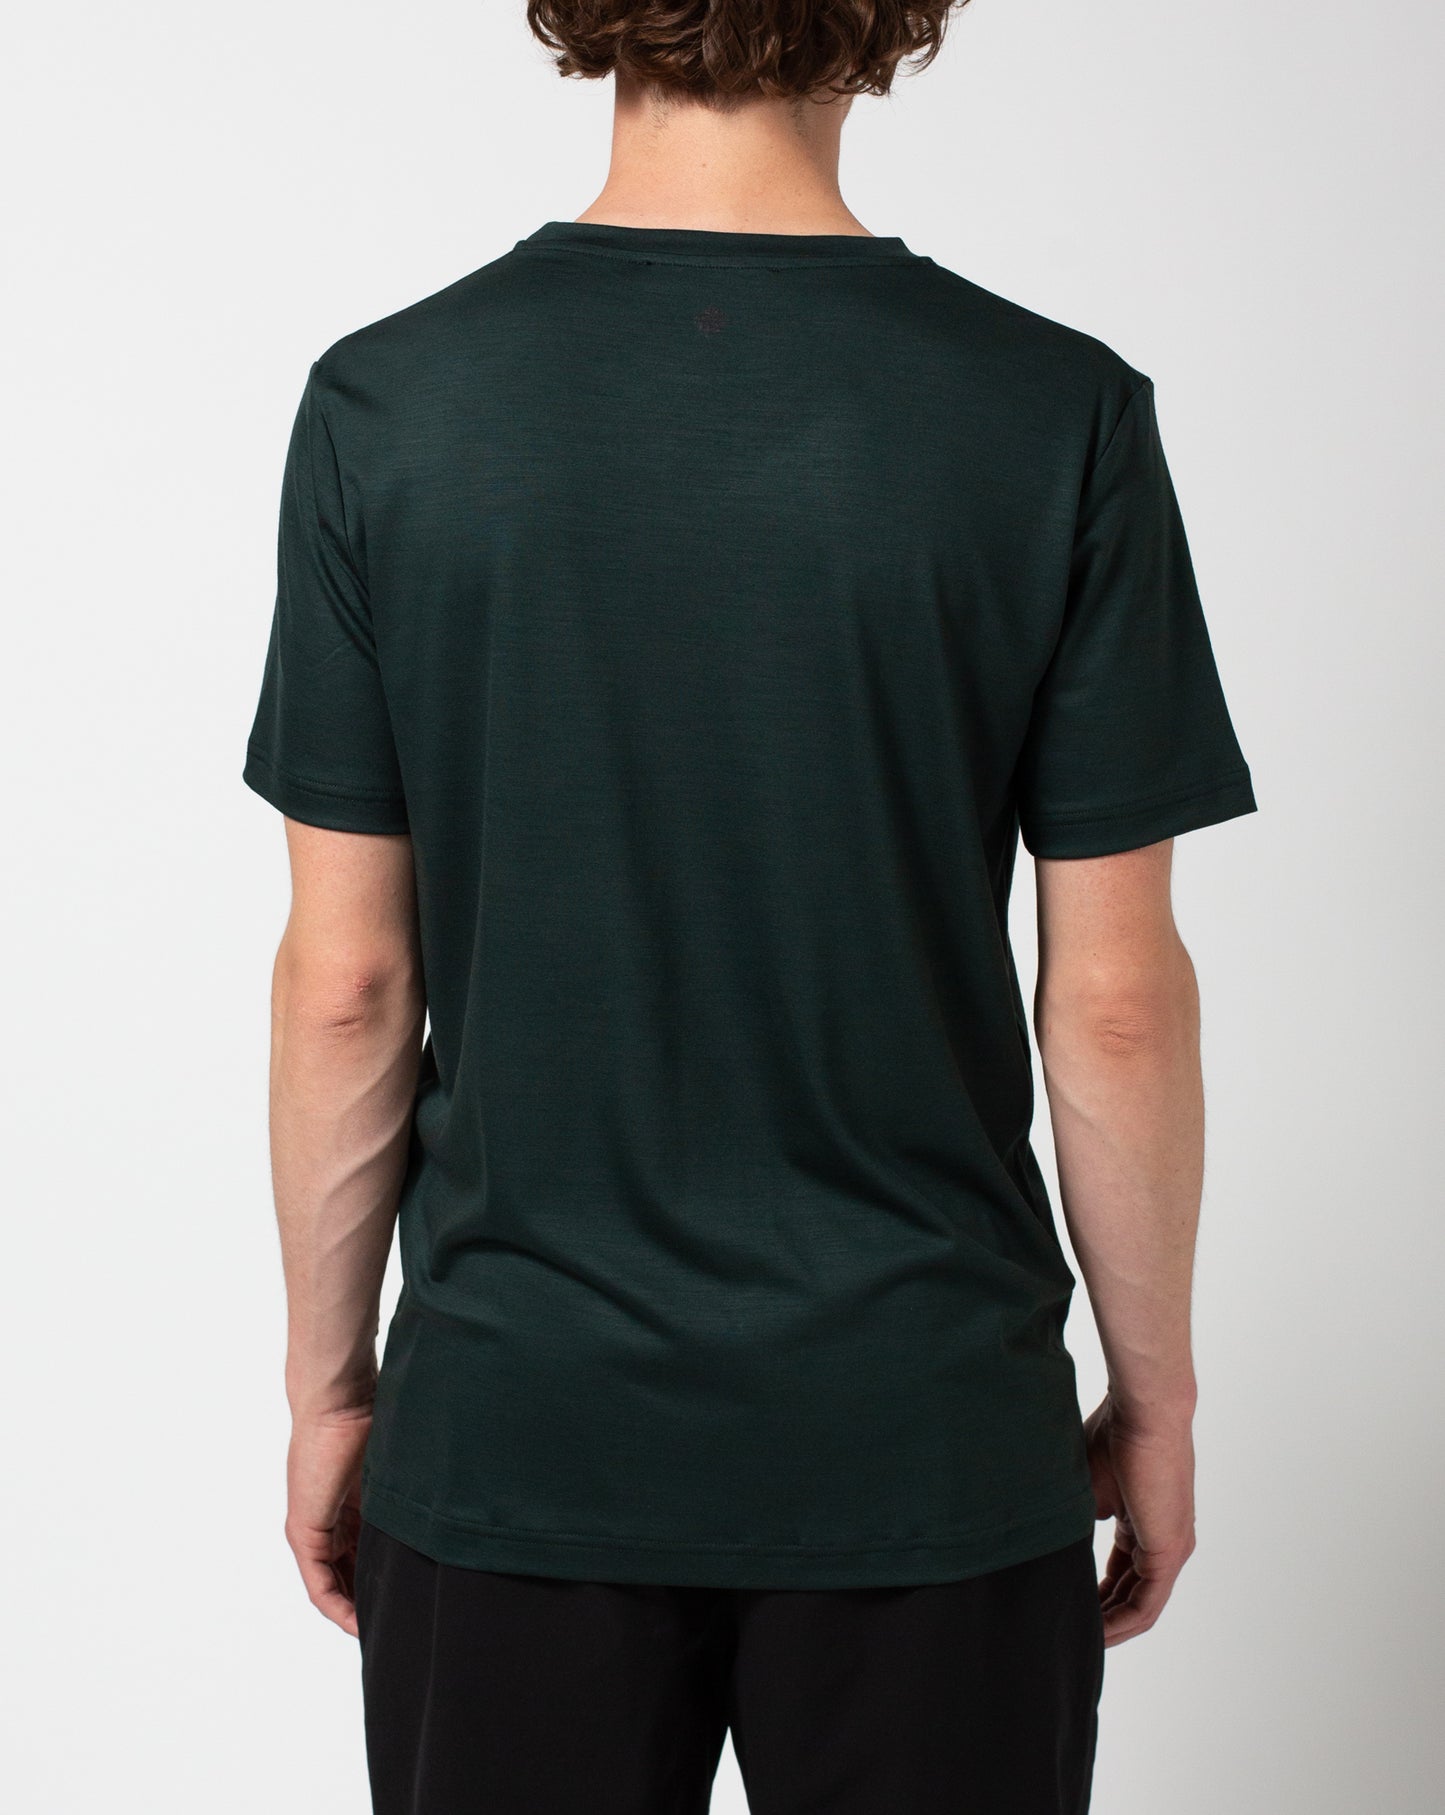 Formal Friday Ultrafine Merino T-Shirt (Green)